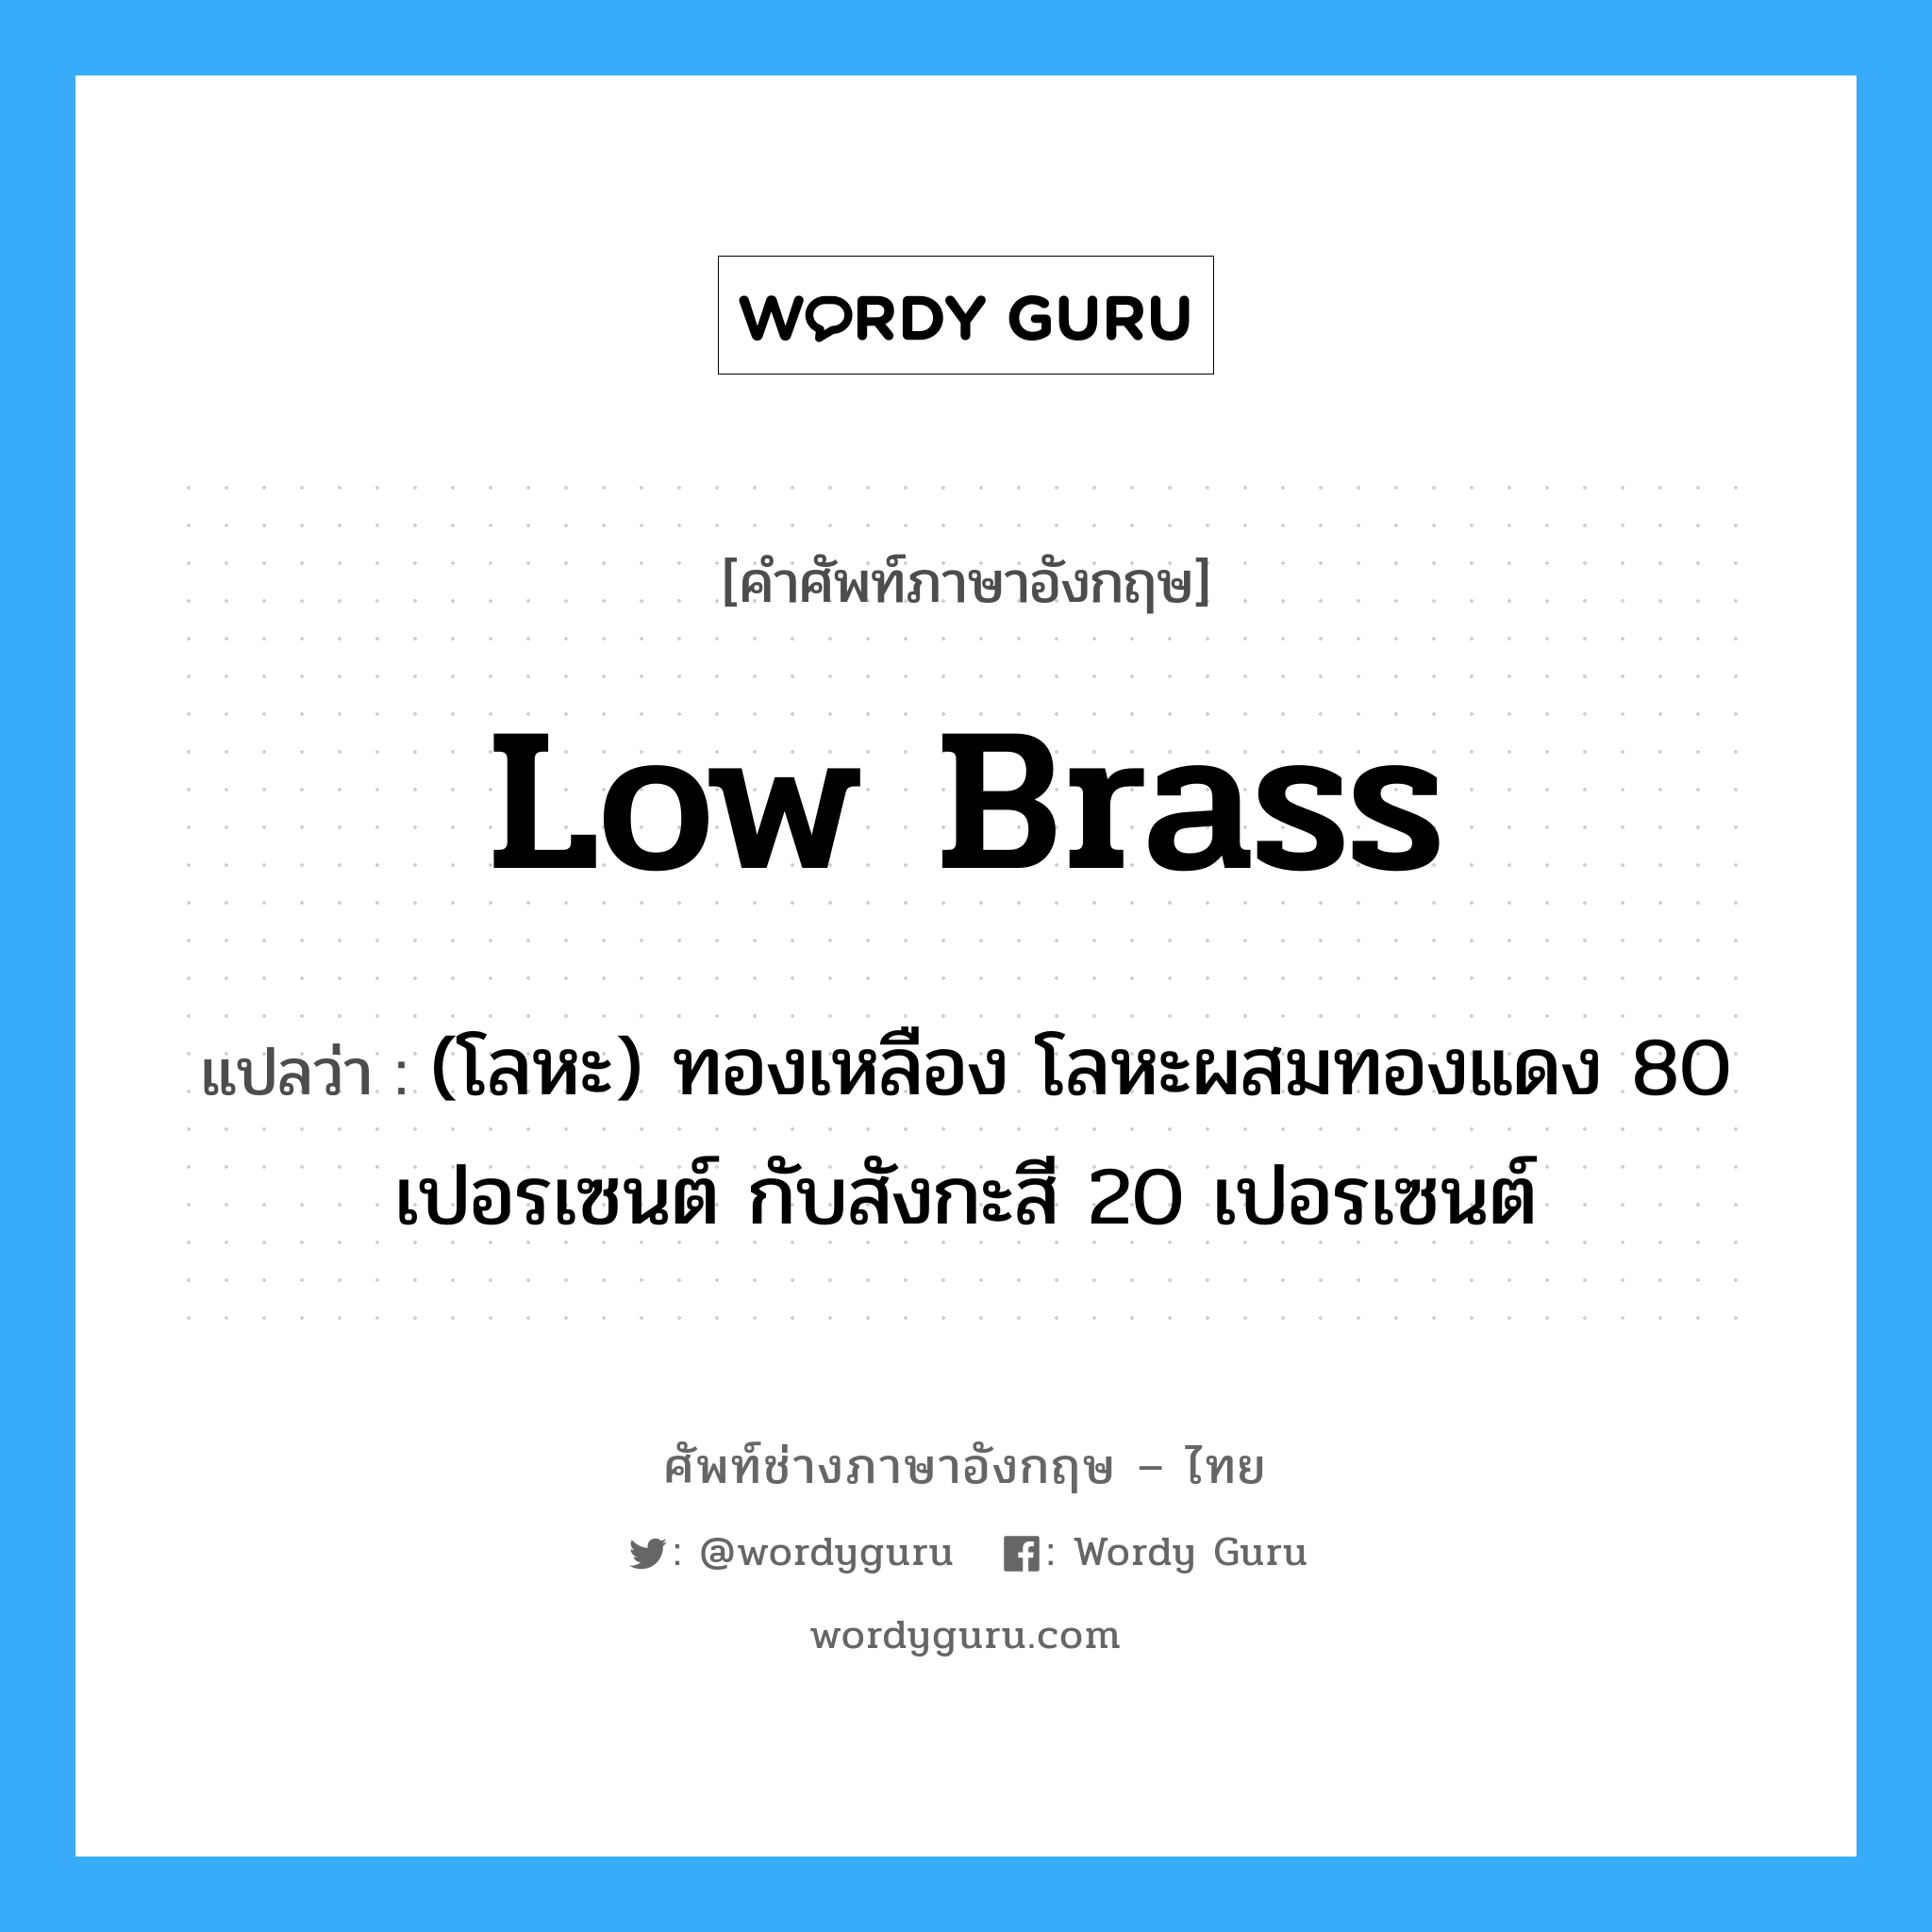 low brass แปลว่า?, คำศัพท์ช่างภาษาอังกฤษ - ไทย low brass คำศัพท์ภาษาอังกฤษ low brass แปลว่า (โลหะ) ทองเหลือง โลหะผสมทองแดง 80 เปอรเซนต์ กับสังกะสี 20 เปอรเซนต์